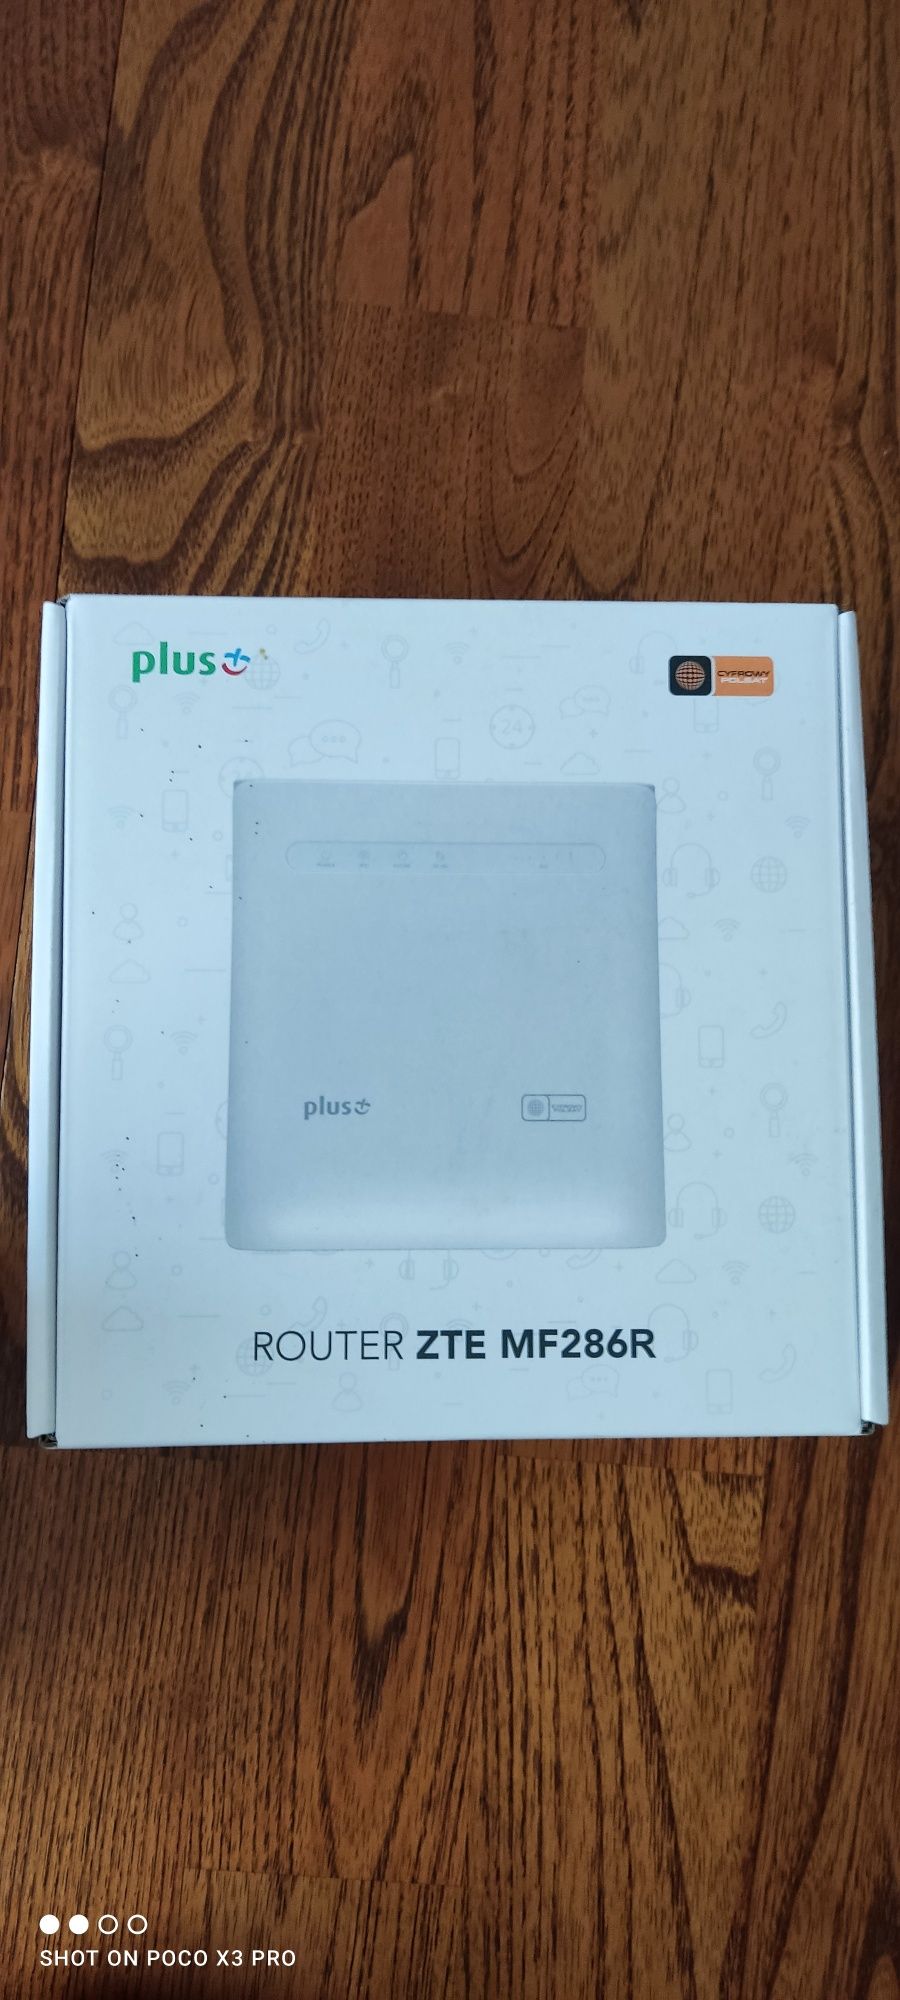 Router Zte mf286r 4g lte